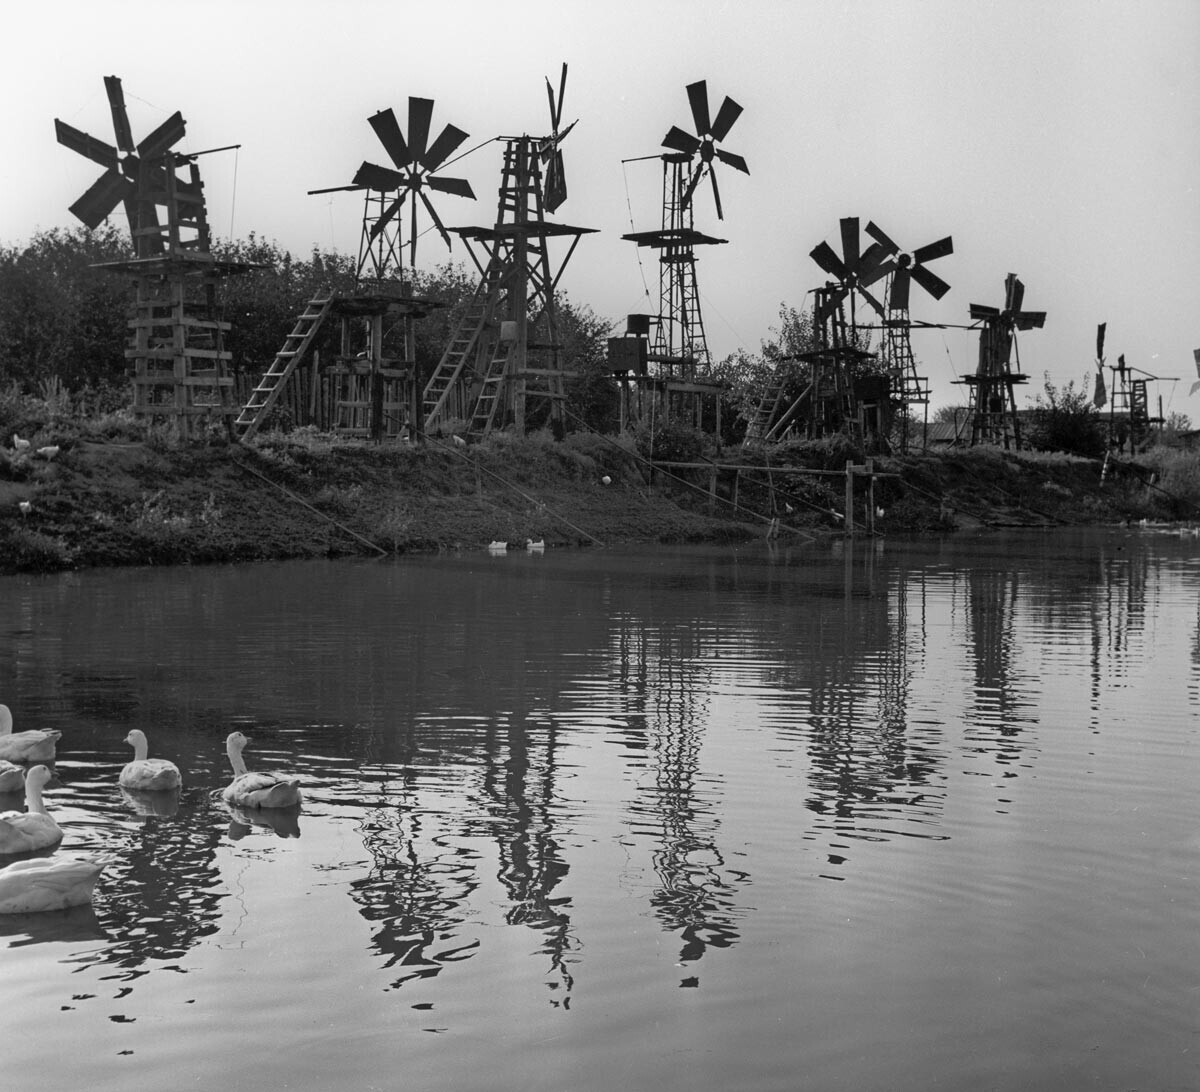 Usina eólica ajudou a irrigar áreas agrícolas de Ástrakhan, 1969
